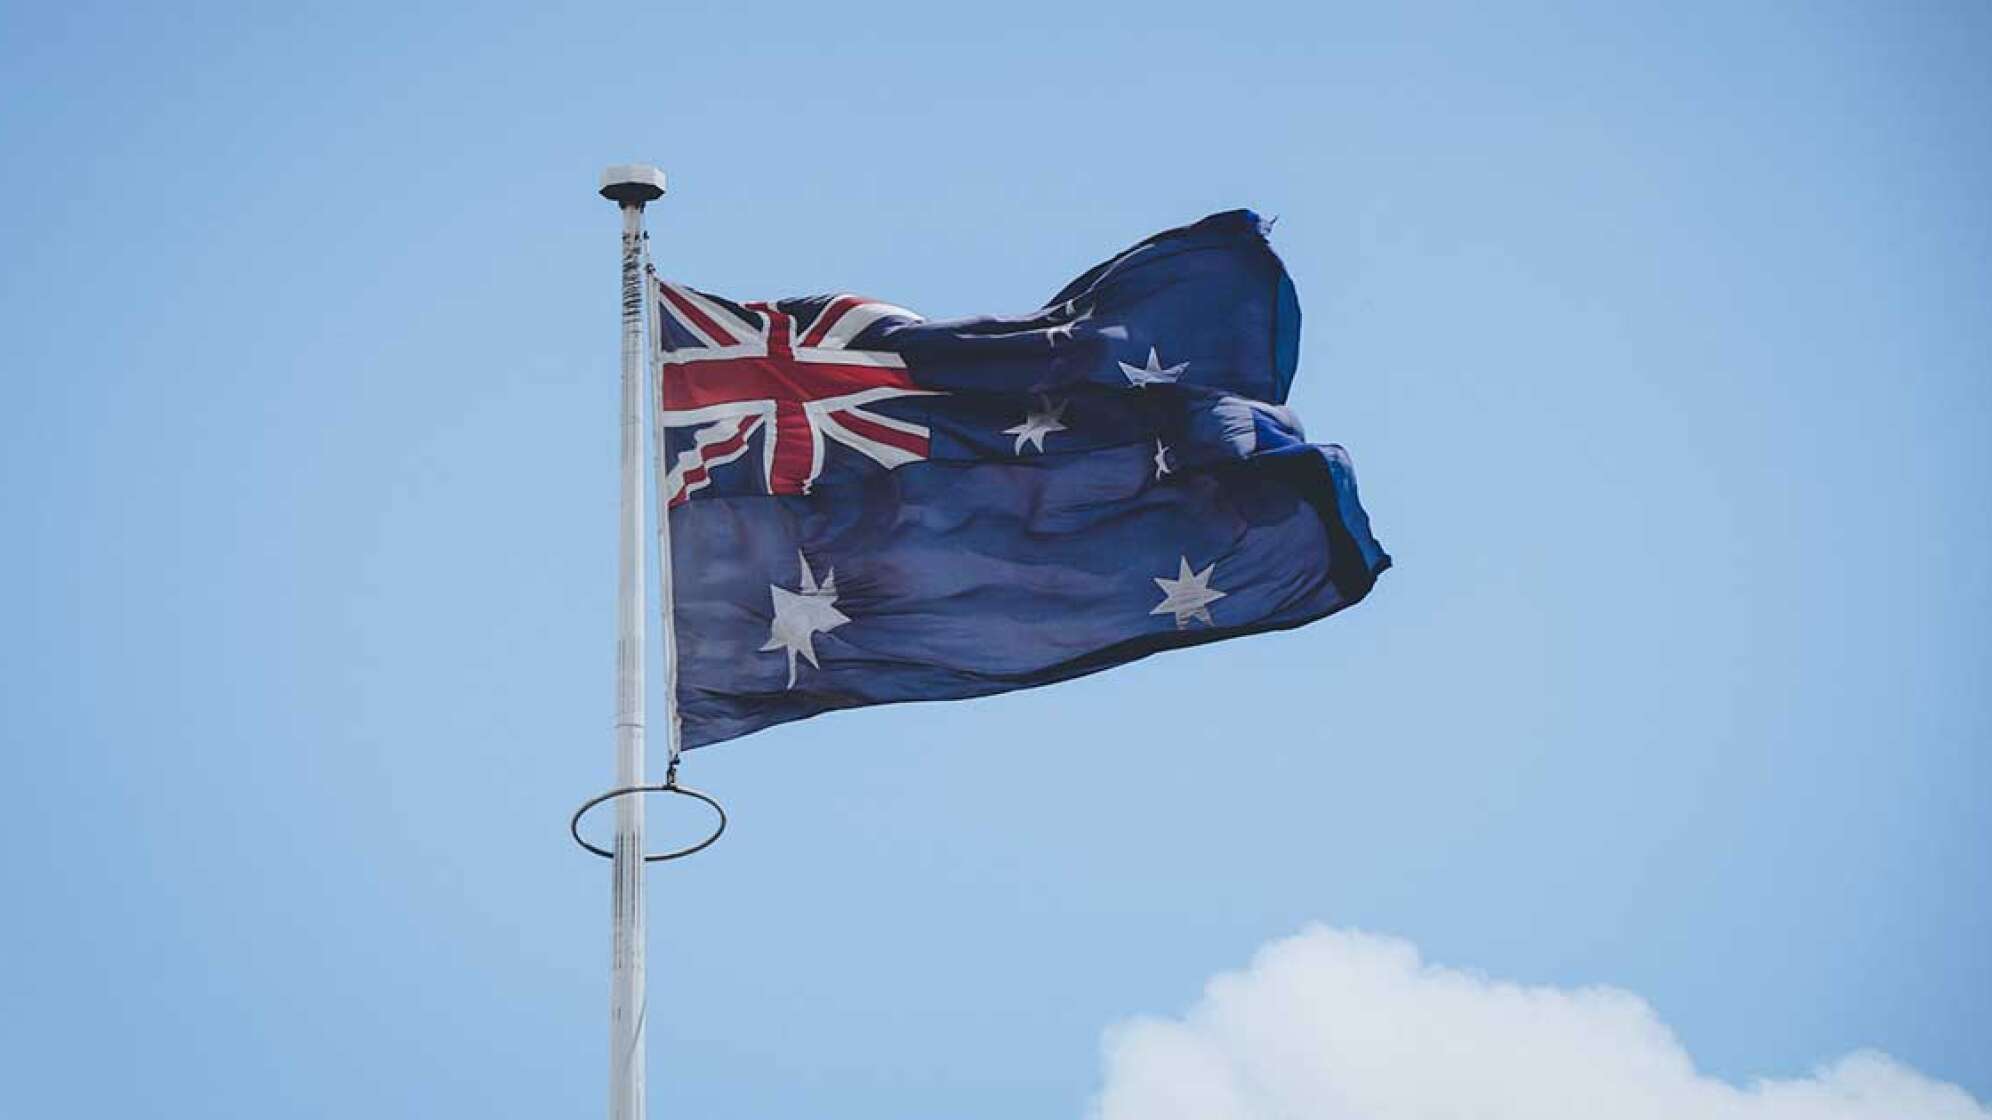 Die Flagge Australiens